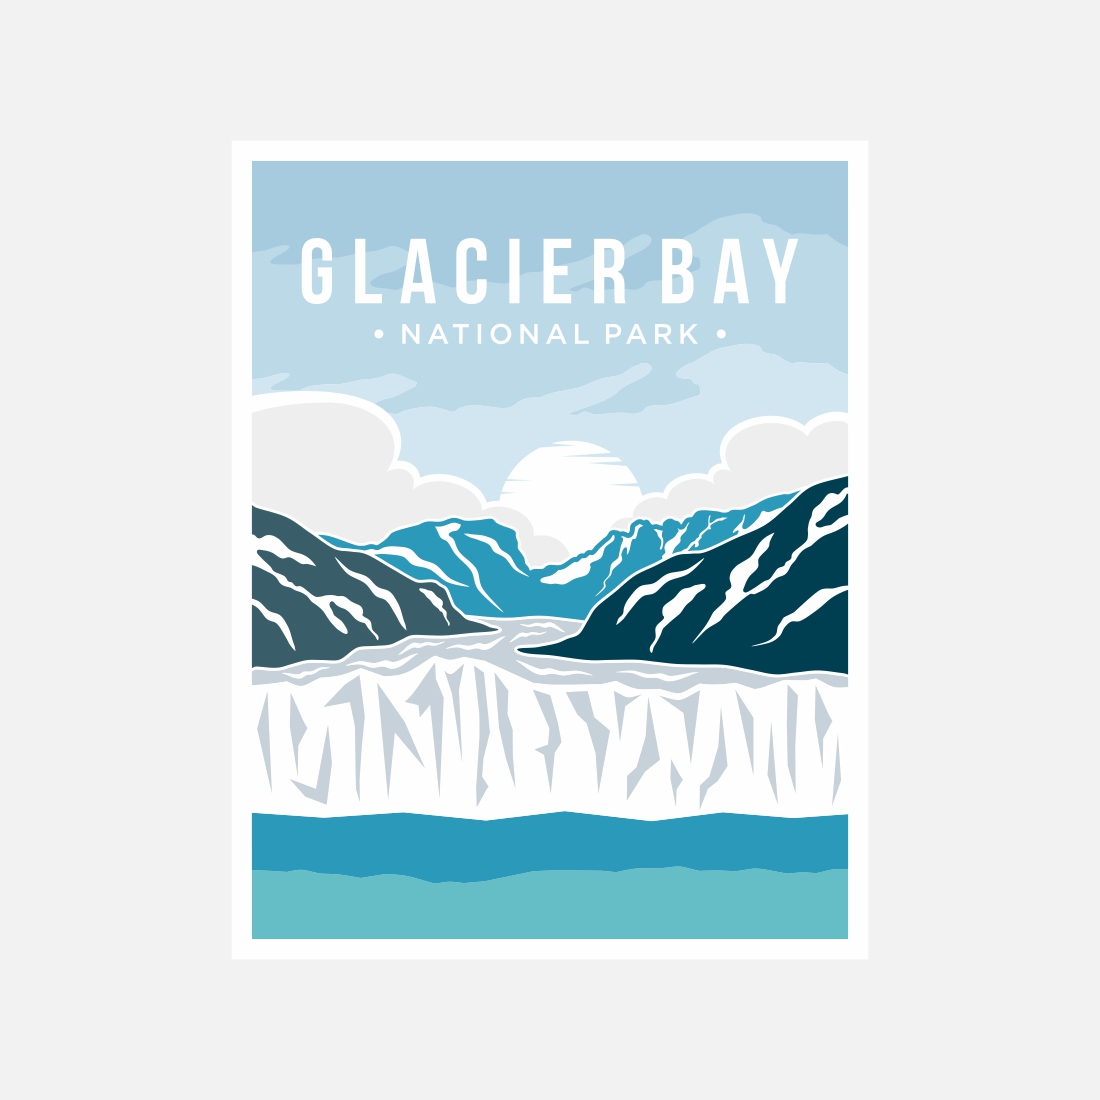 Glacier Bay National Park poster vector illustration design – Only $8 preview image.